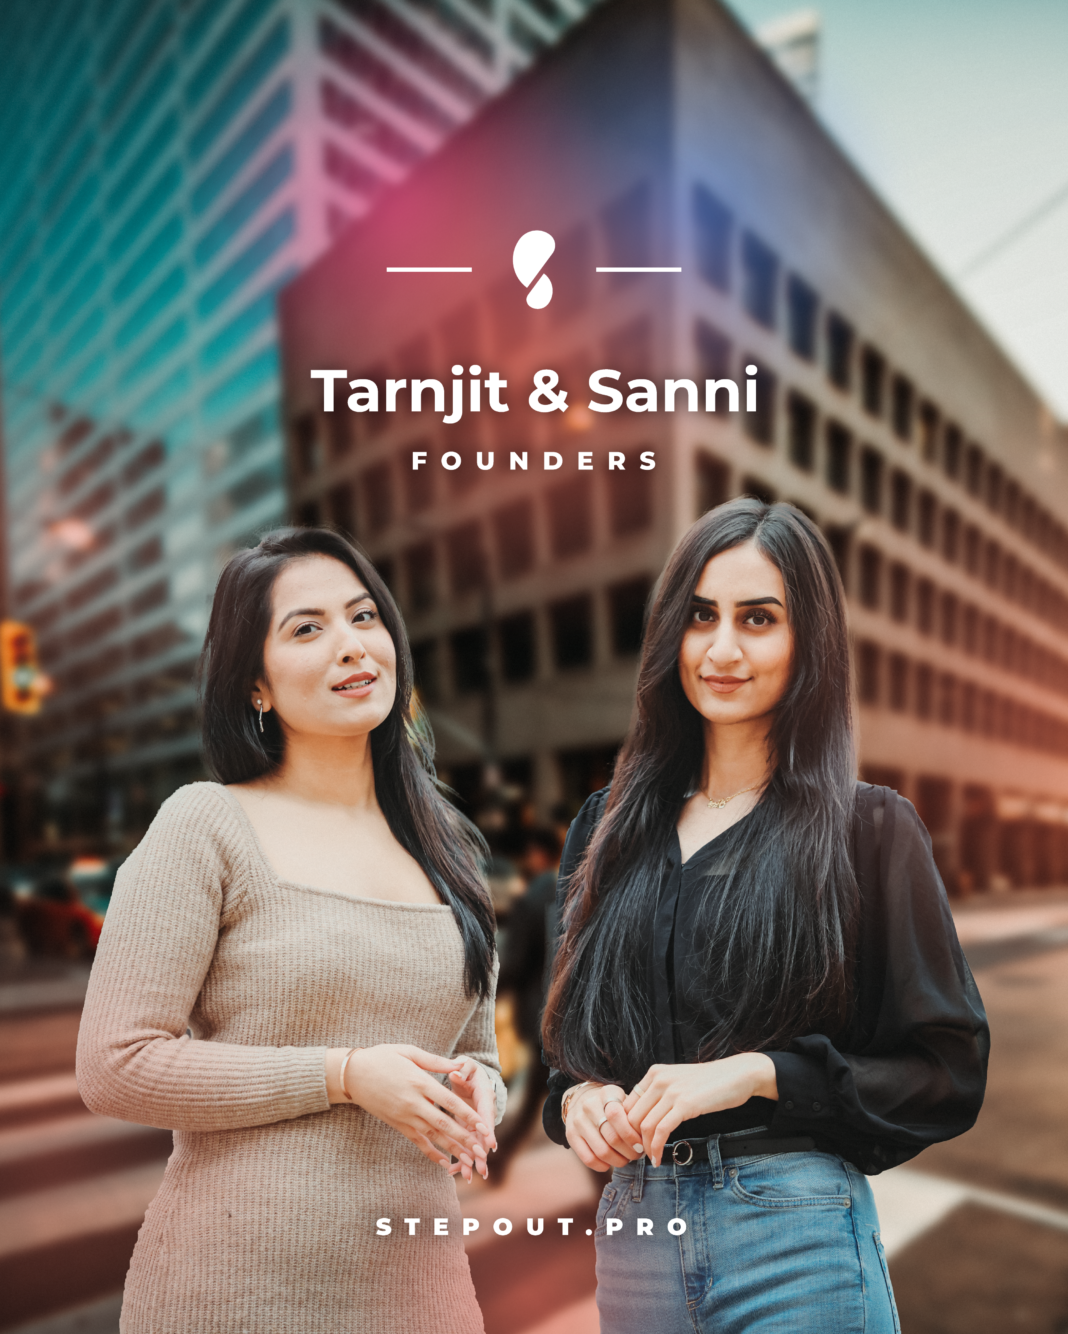 Tarnjit & Sanni of StepOut.Pro